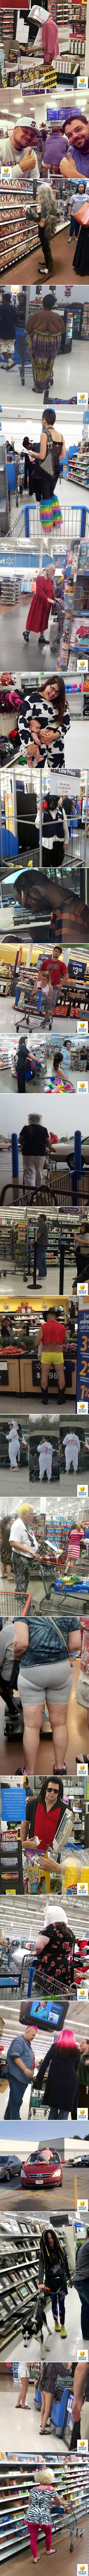 Neobična moda, majmuni i guzice: Ovakve čudake možete vidjeti samo u američkim supermarketima